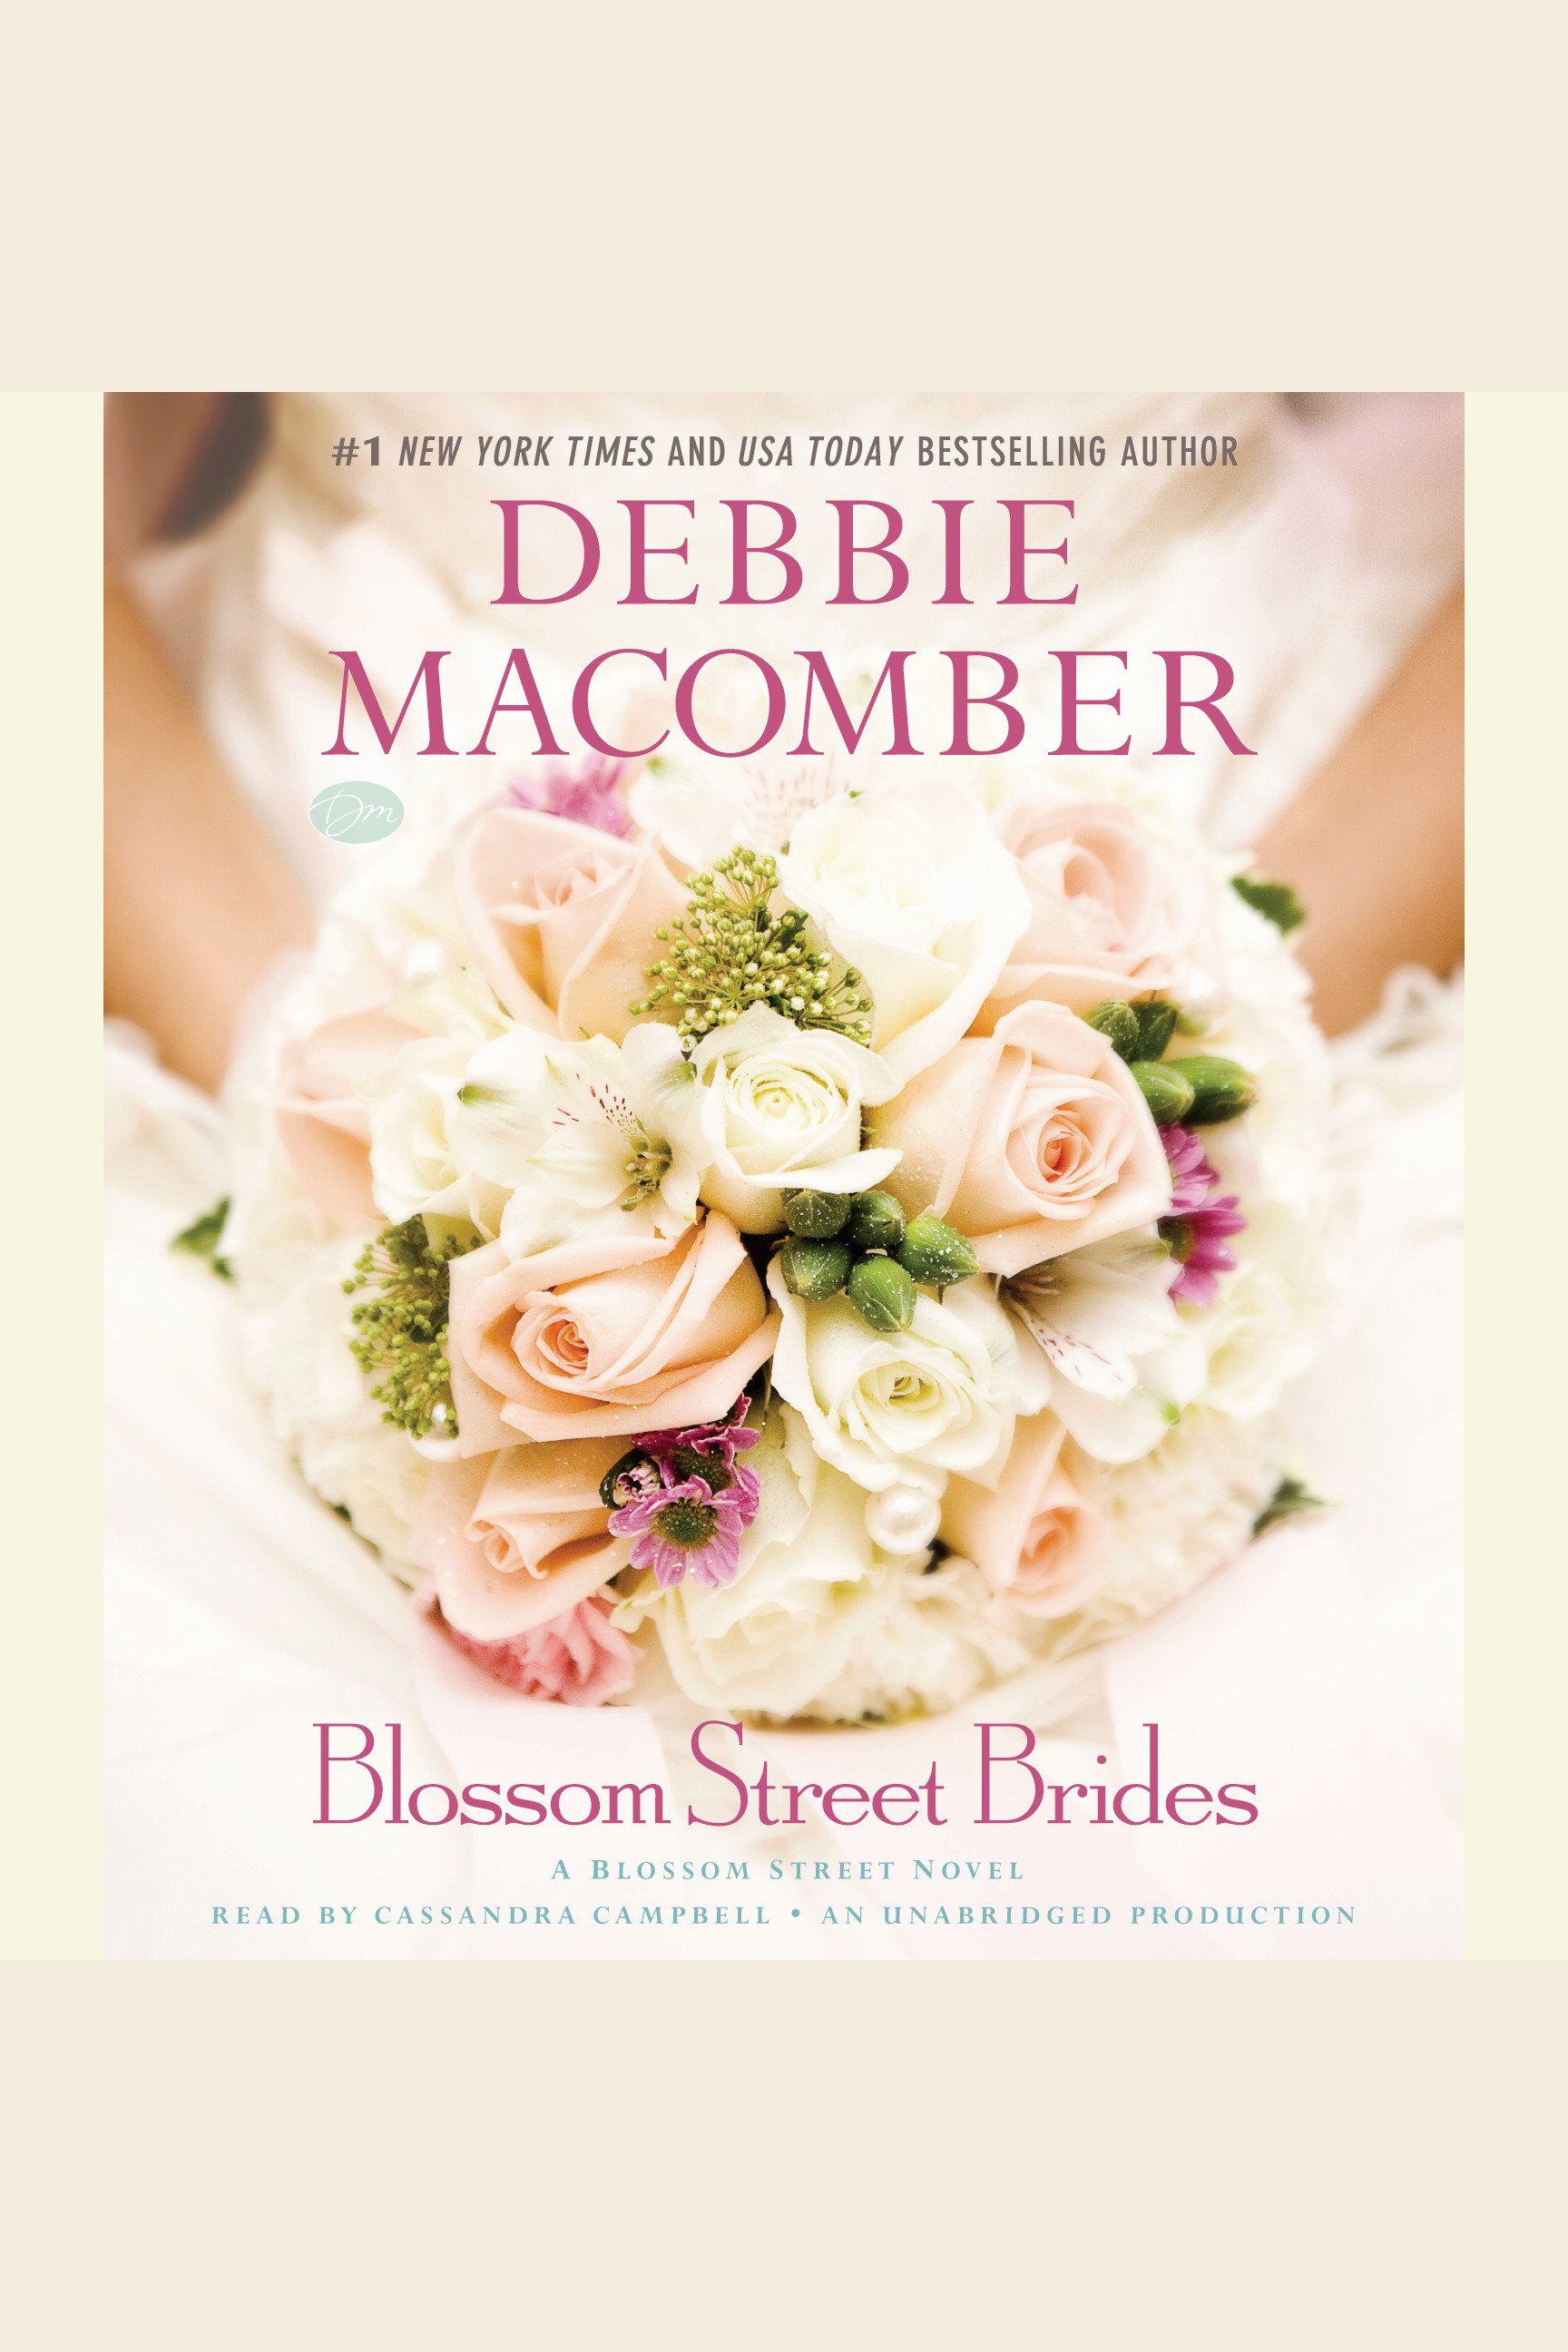 Blossom Street bridesl cover image